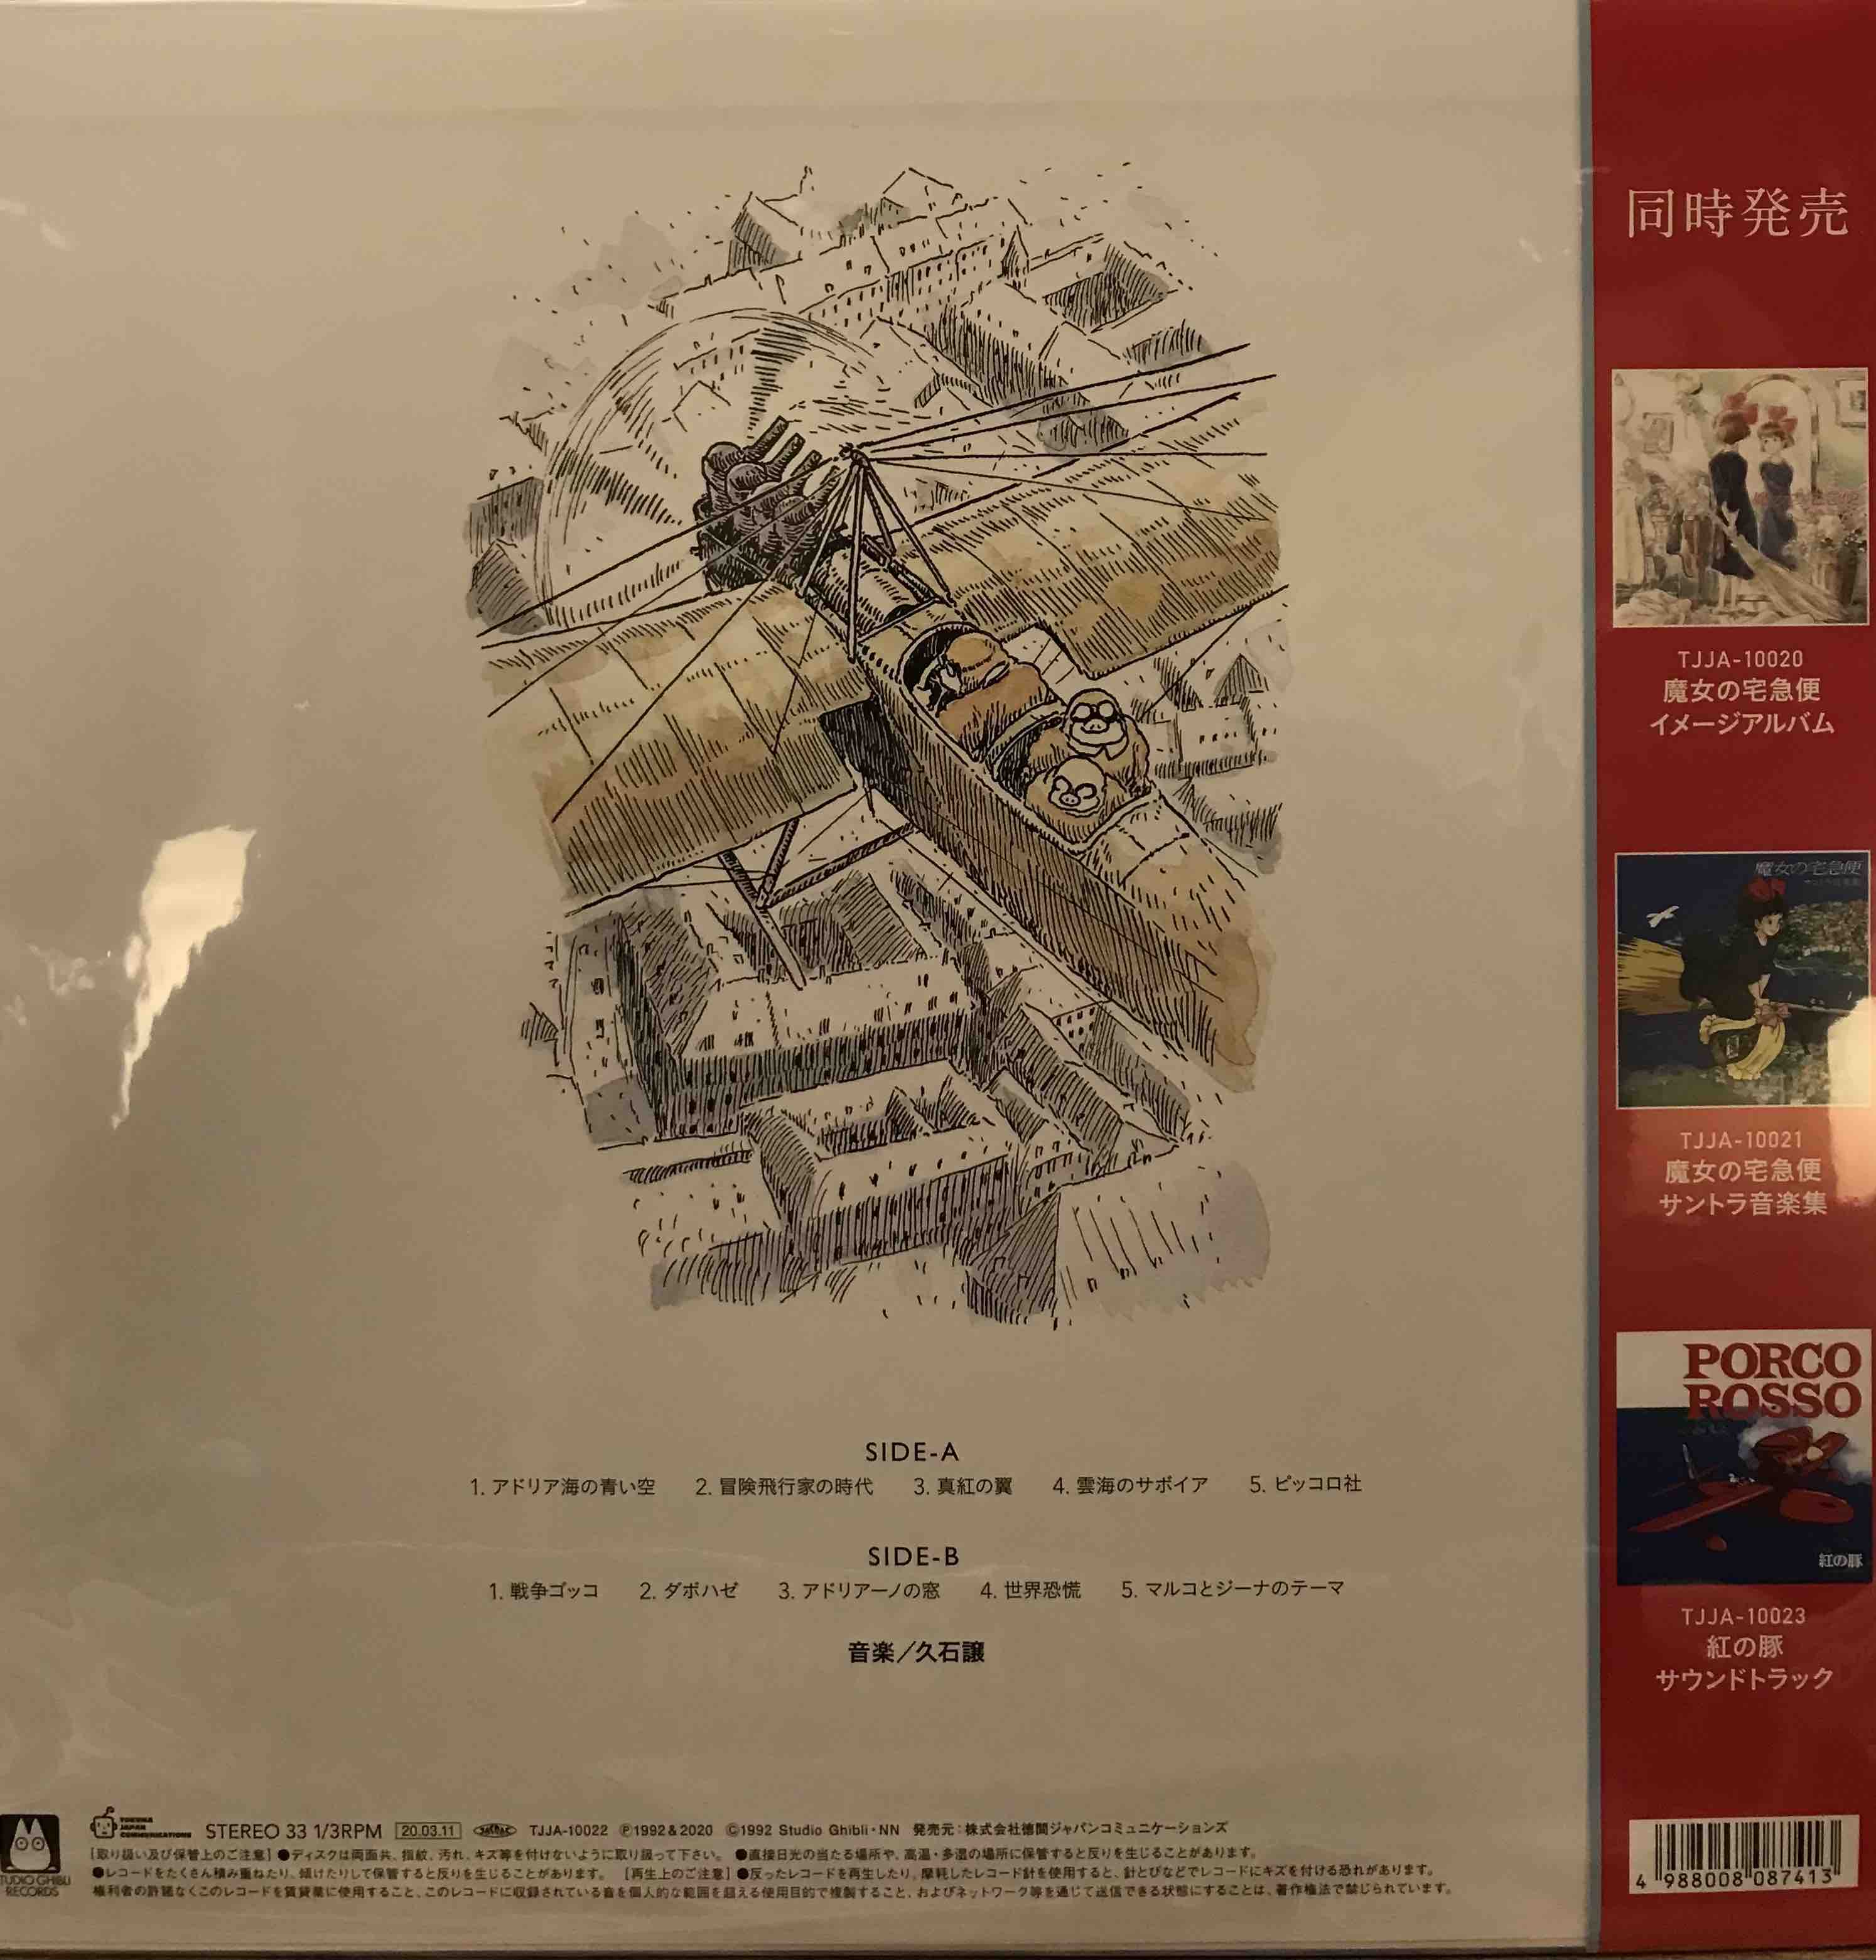 久石 譲 ‎– 紅の豚 (イメージアルバム) = JOE HISAISHI - Porco Rosso (Image Album)